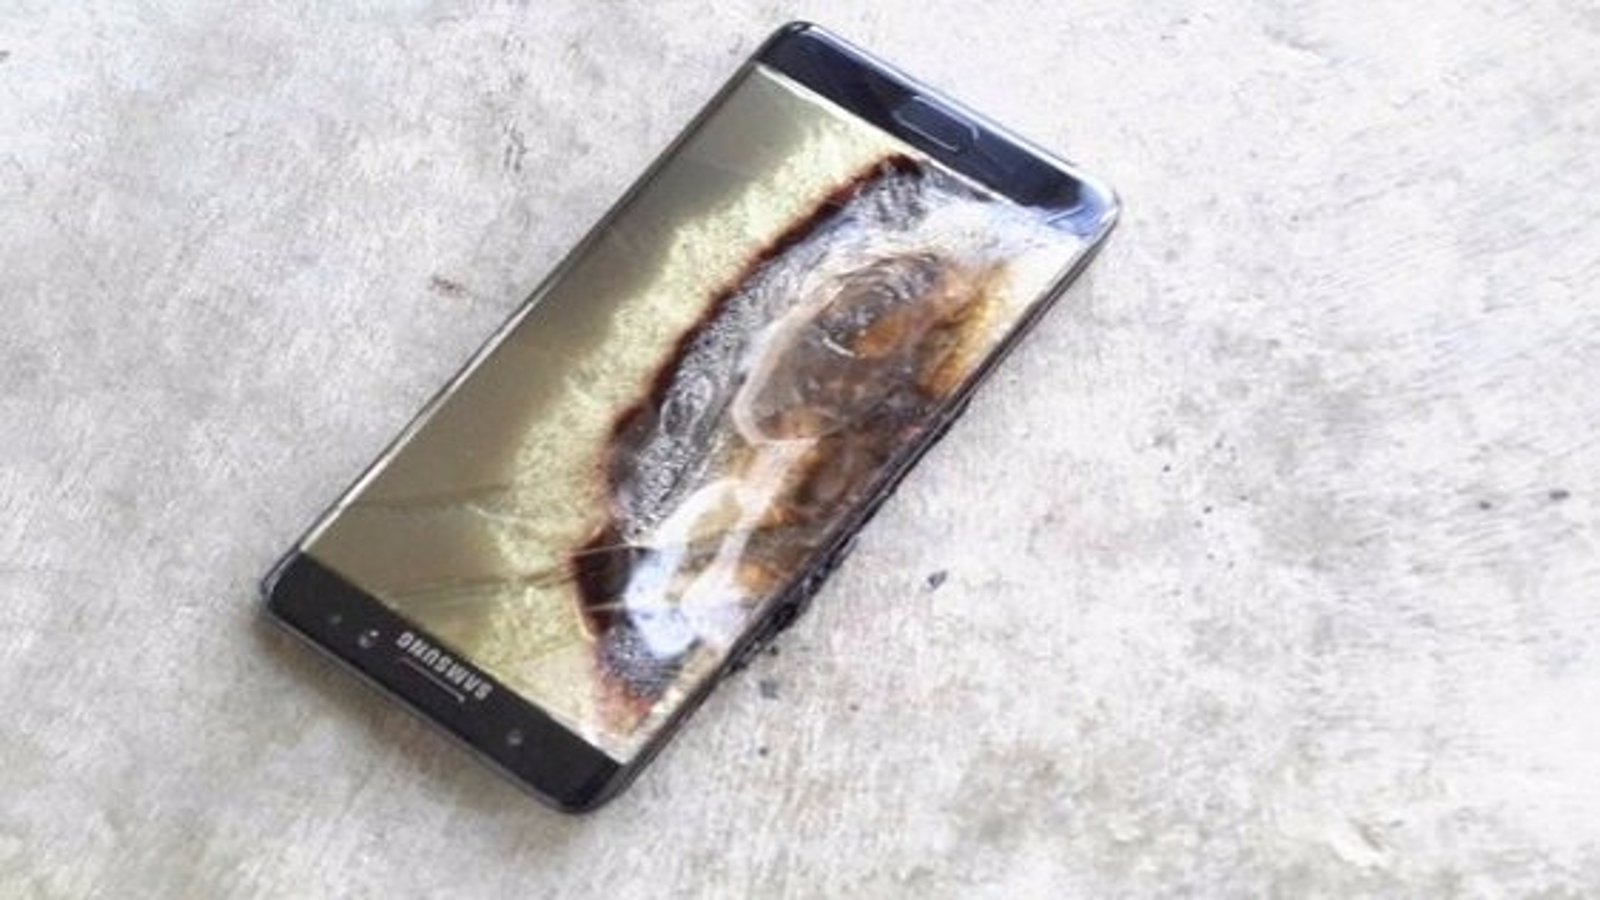 Samsung tenta tirar vídeo do  que mostra Note 7 como bomba em GTA V  - Giz Brasil